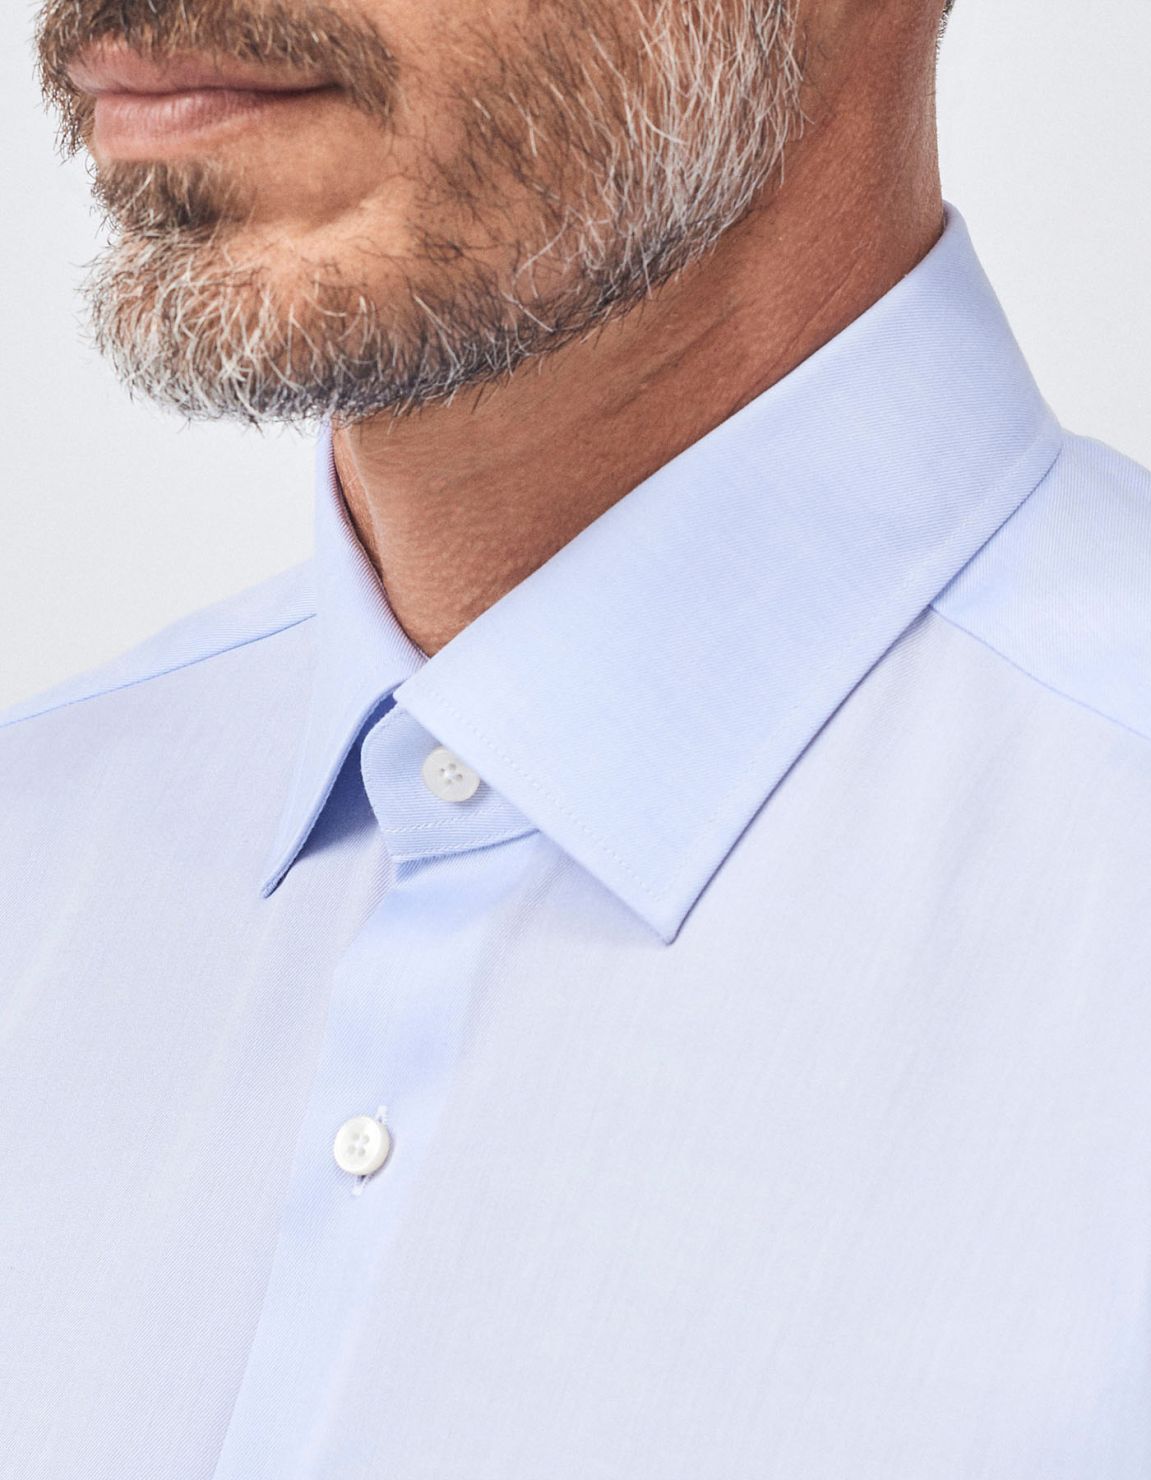 Camisa Cuello italiano Celeste oscuro Texturizado Liso Evolution Classic Fit 3